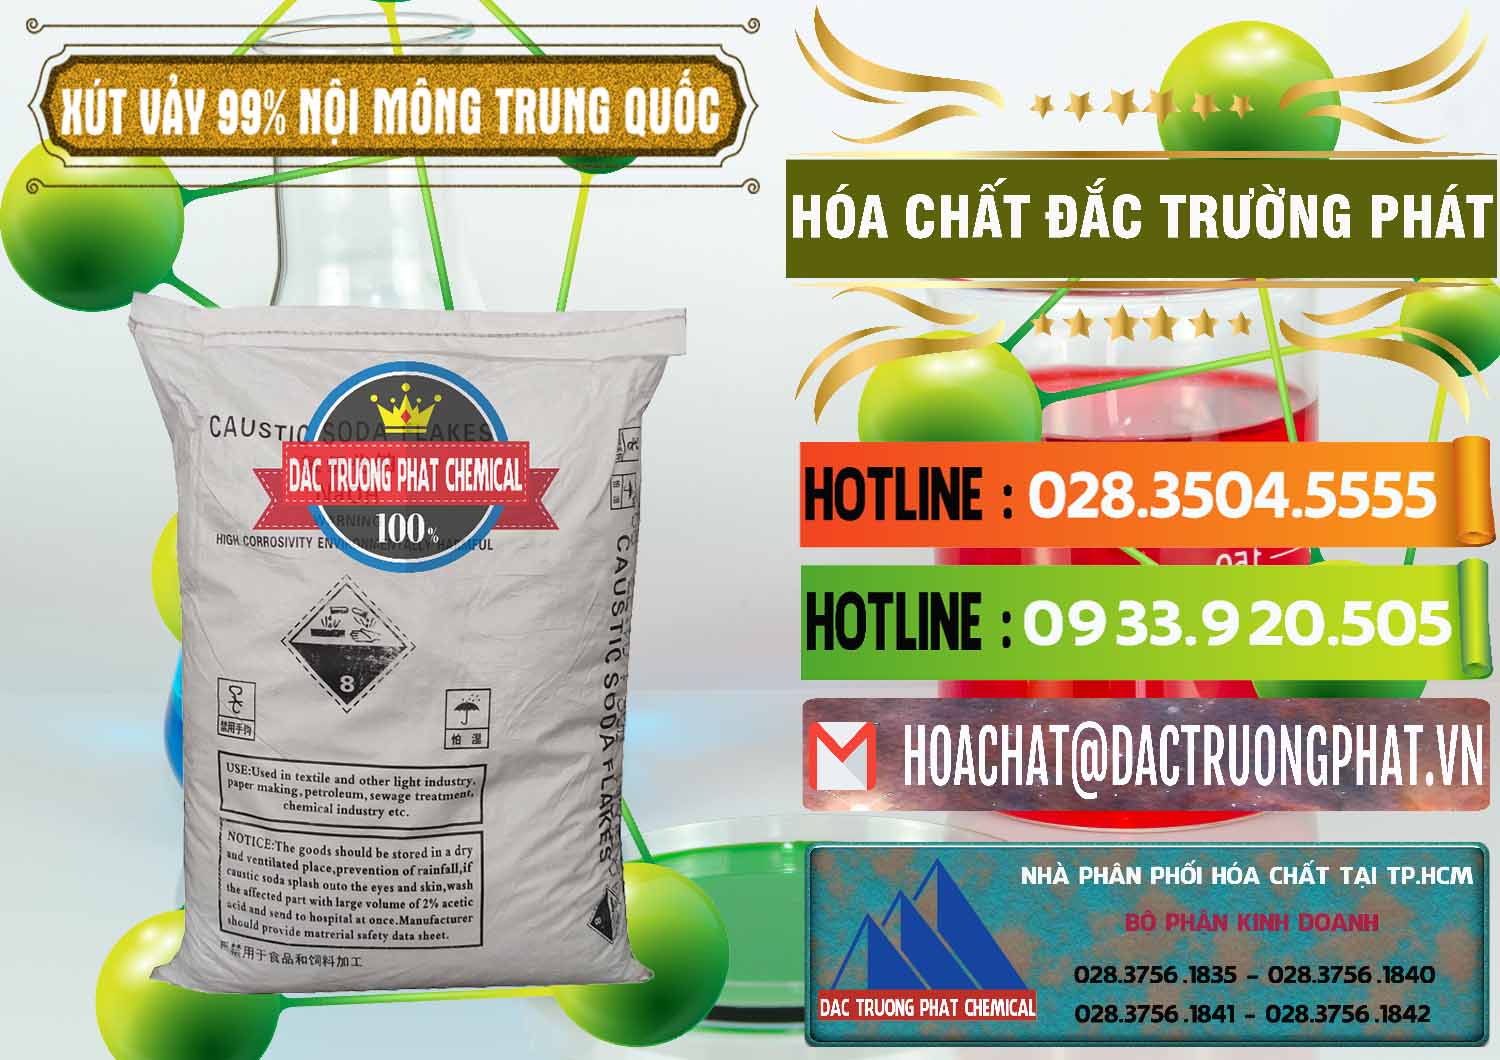 Kinh doanh & bán Xút Vảy - NaOH Vảy 99% Nội Mông Trung Quốc China - 0228 - Công ty cung cấp & bán hóa chất tại TP.HCM - cungcaphoachat.com.vn